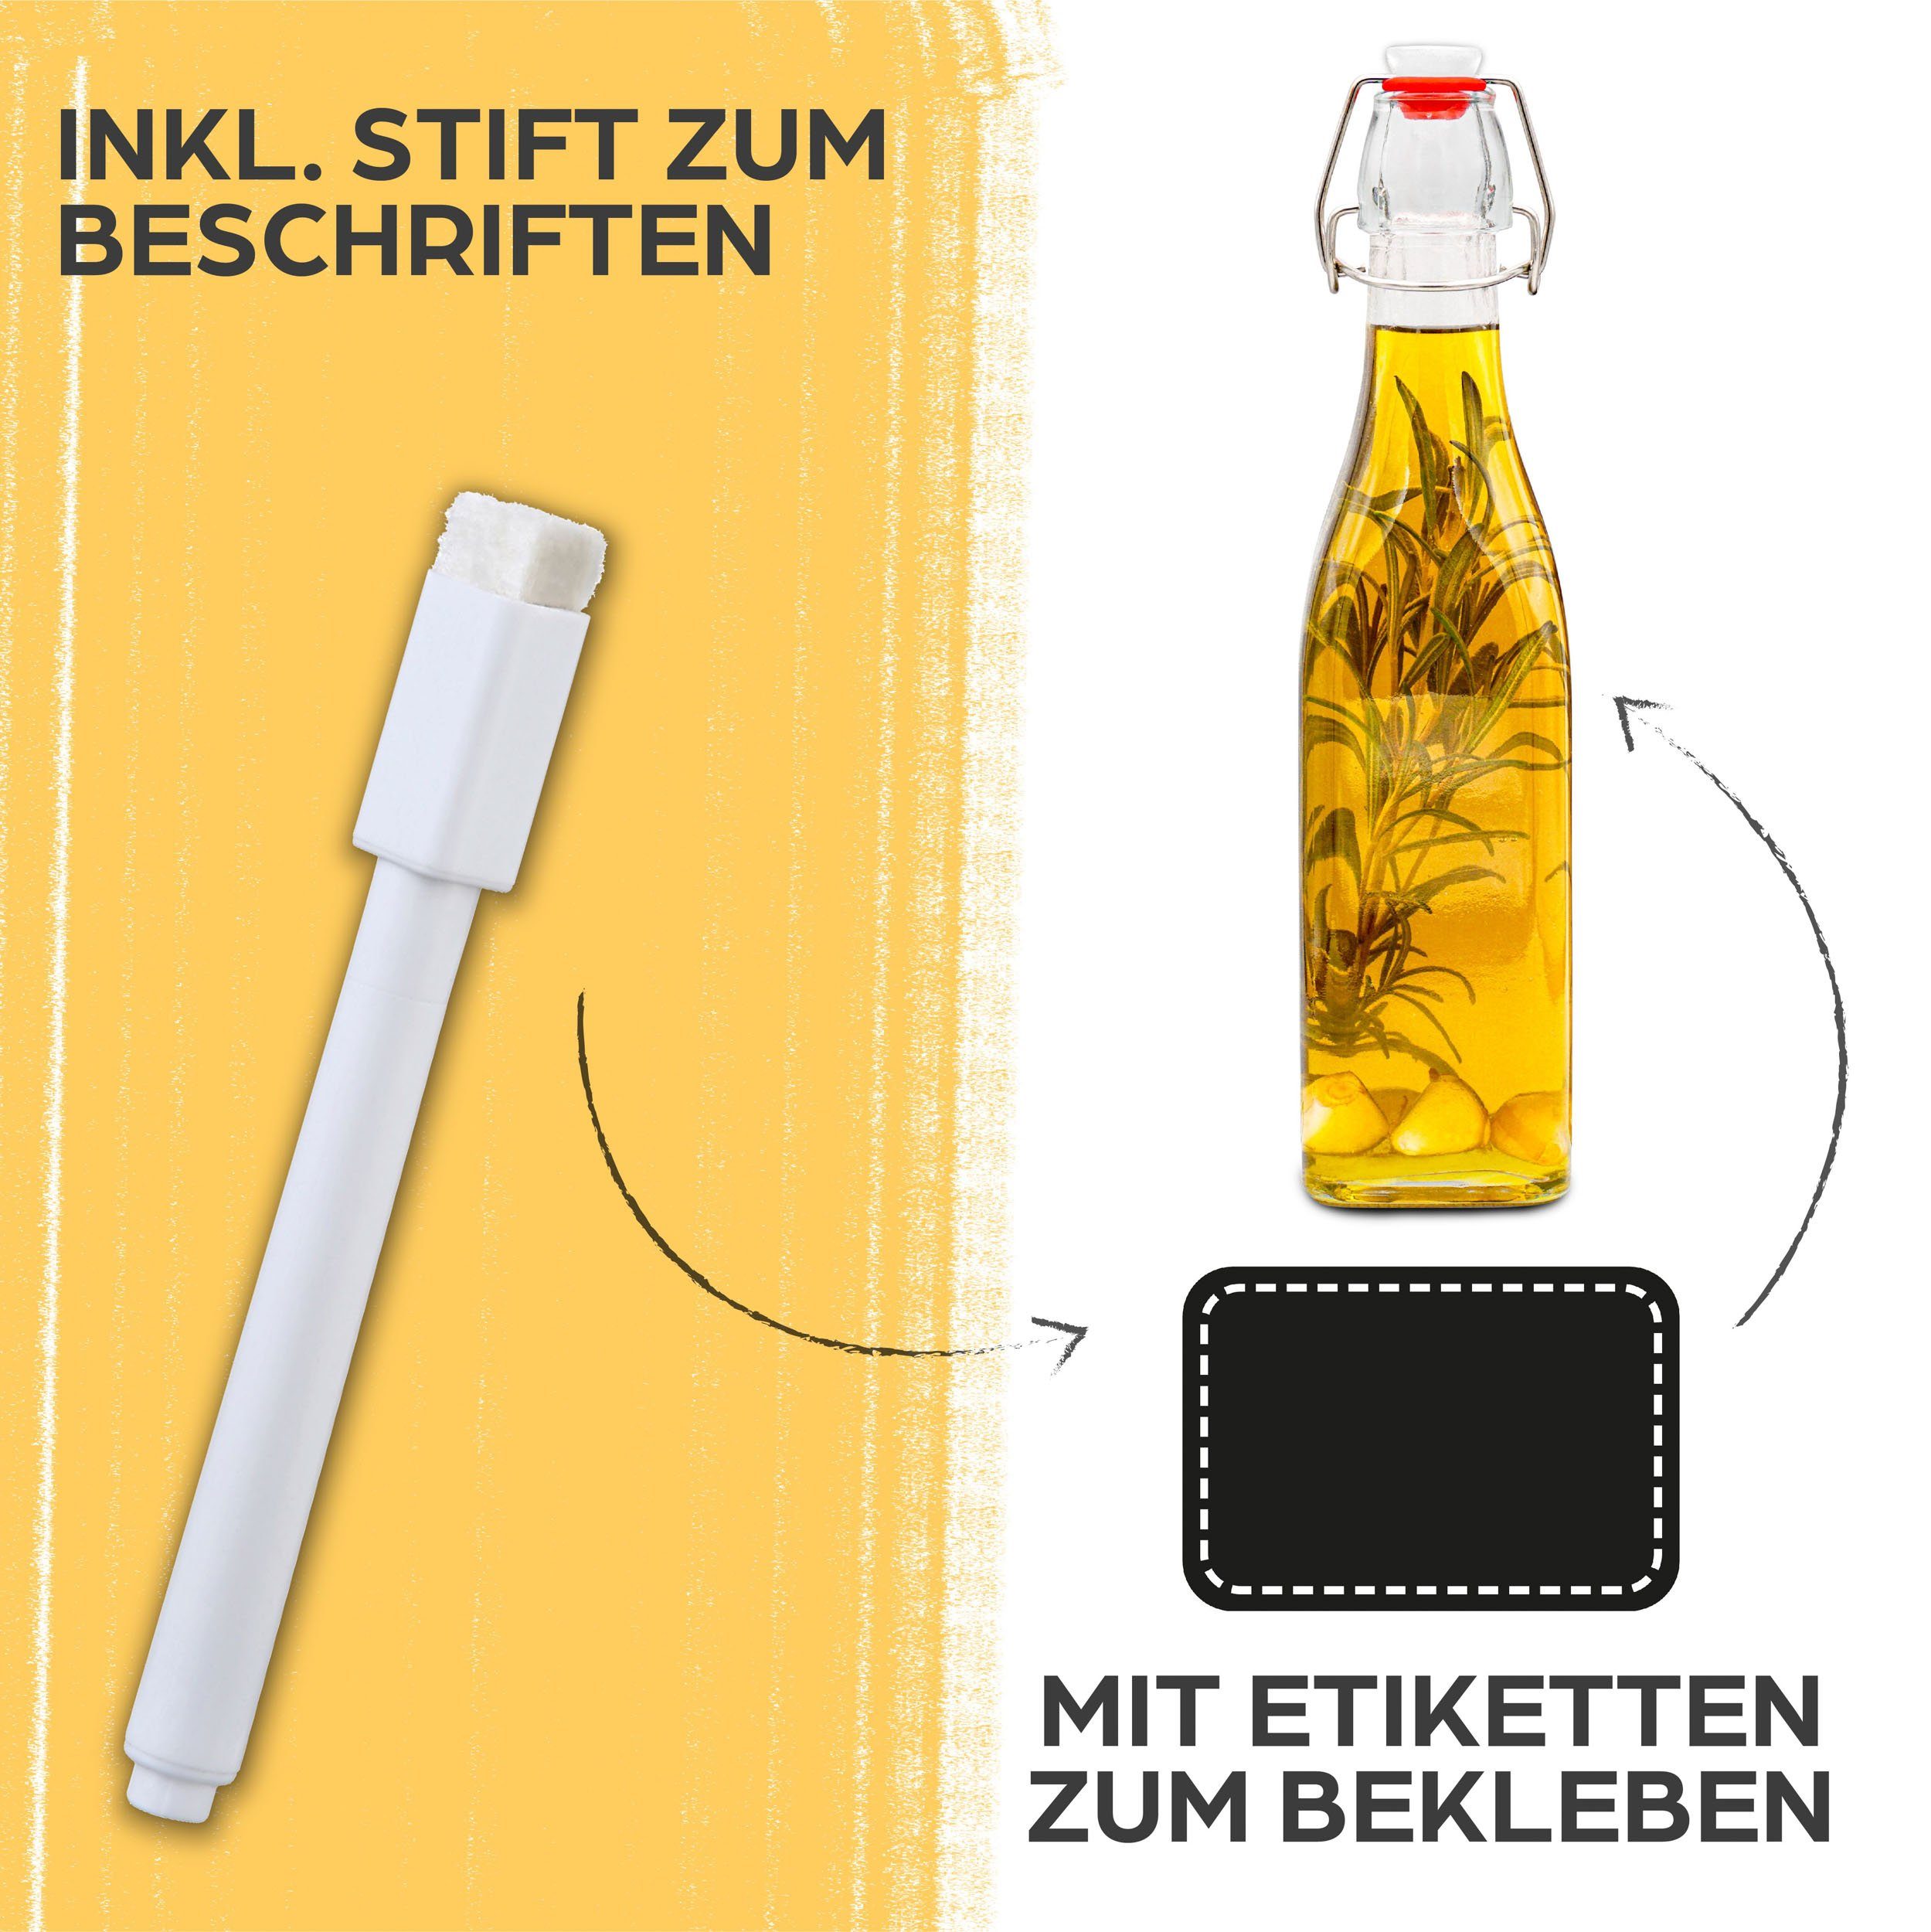 Extra mit Trinkflasche Dichtungen und Eckig - 6 Bügelverschluss Praknu Stift Eckig Glasflaschen 6 6 Etiketten 500ml,